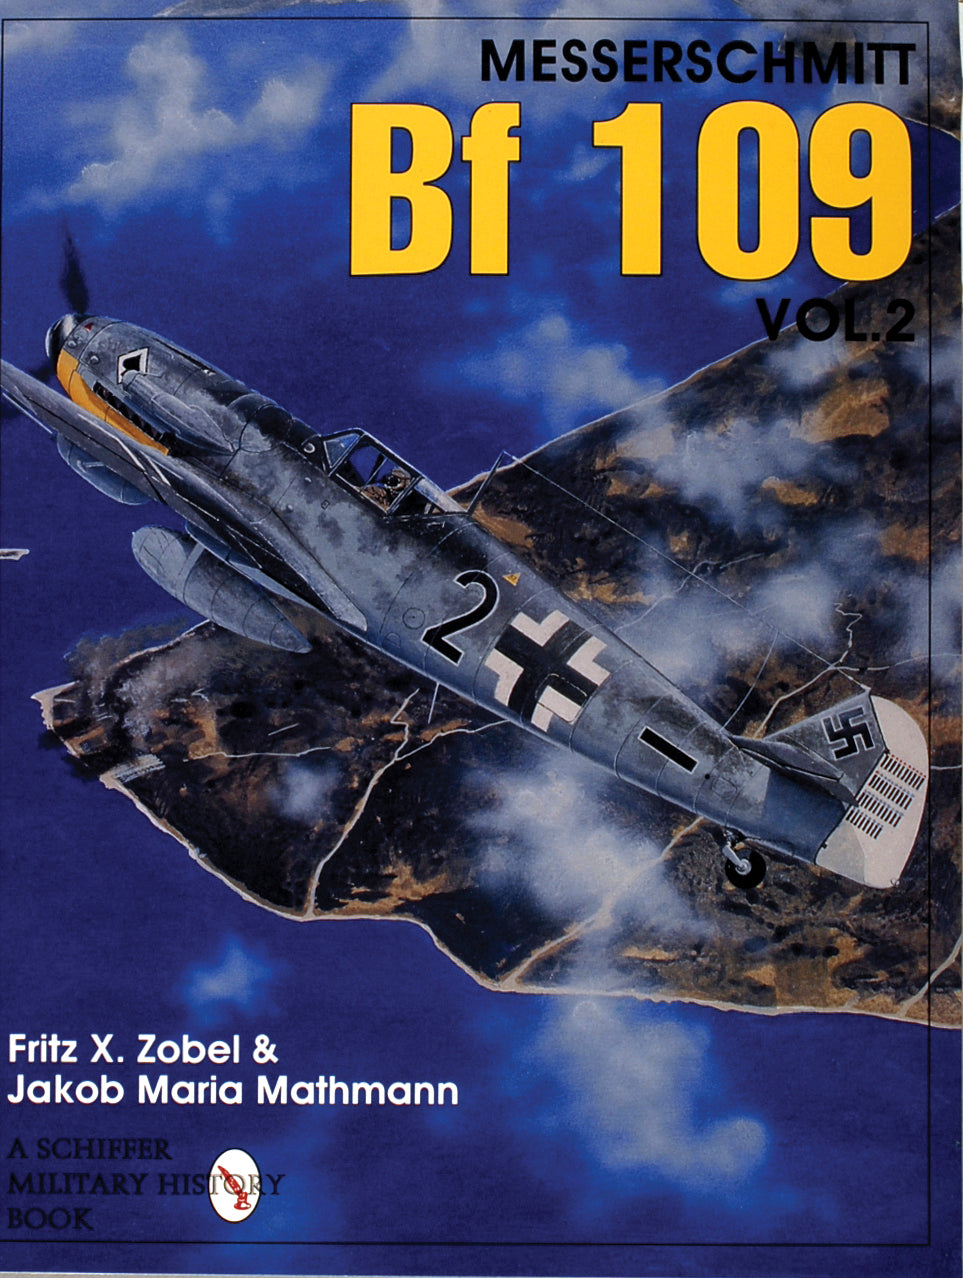 Messerschmitt Bf 109 Vol.2